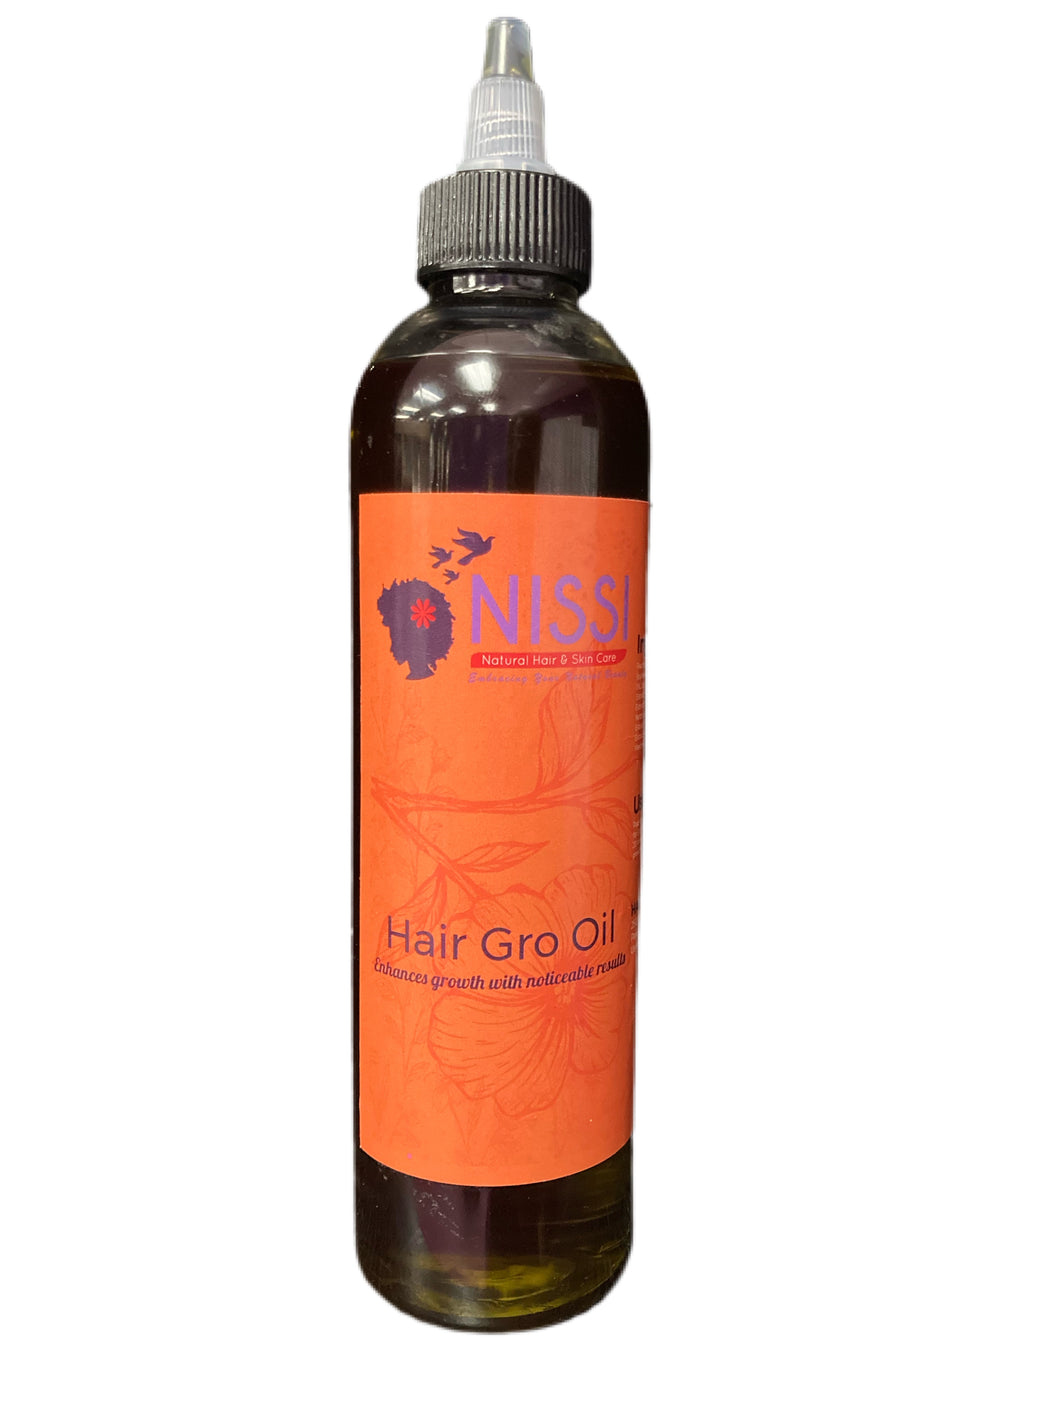 HairGro Oil